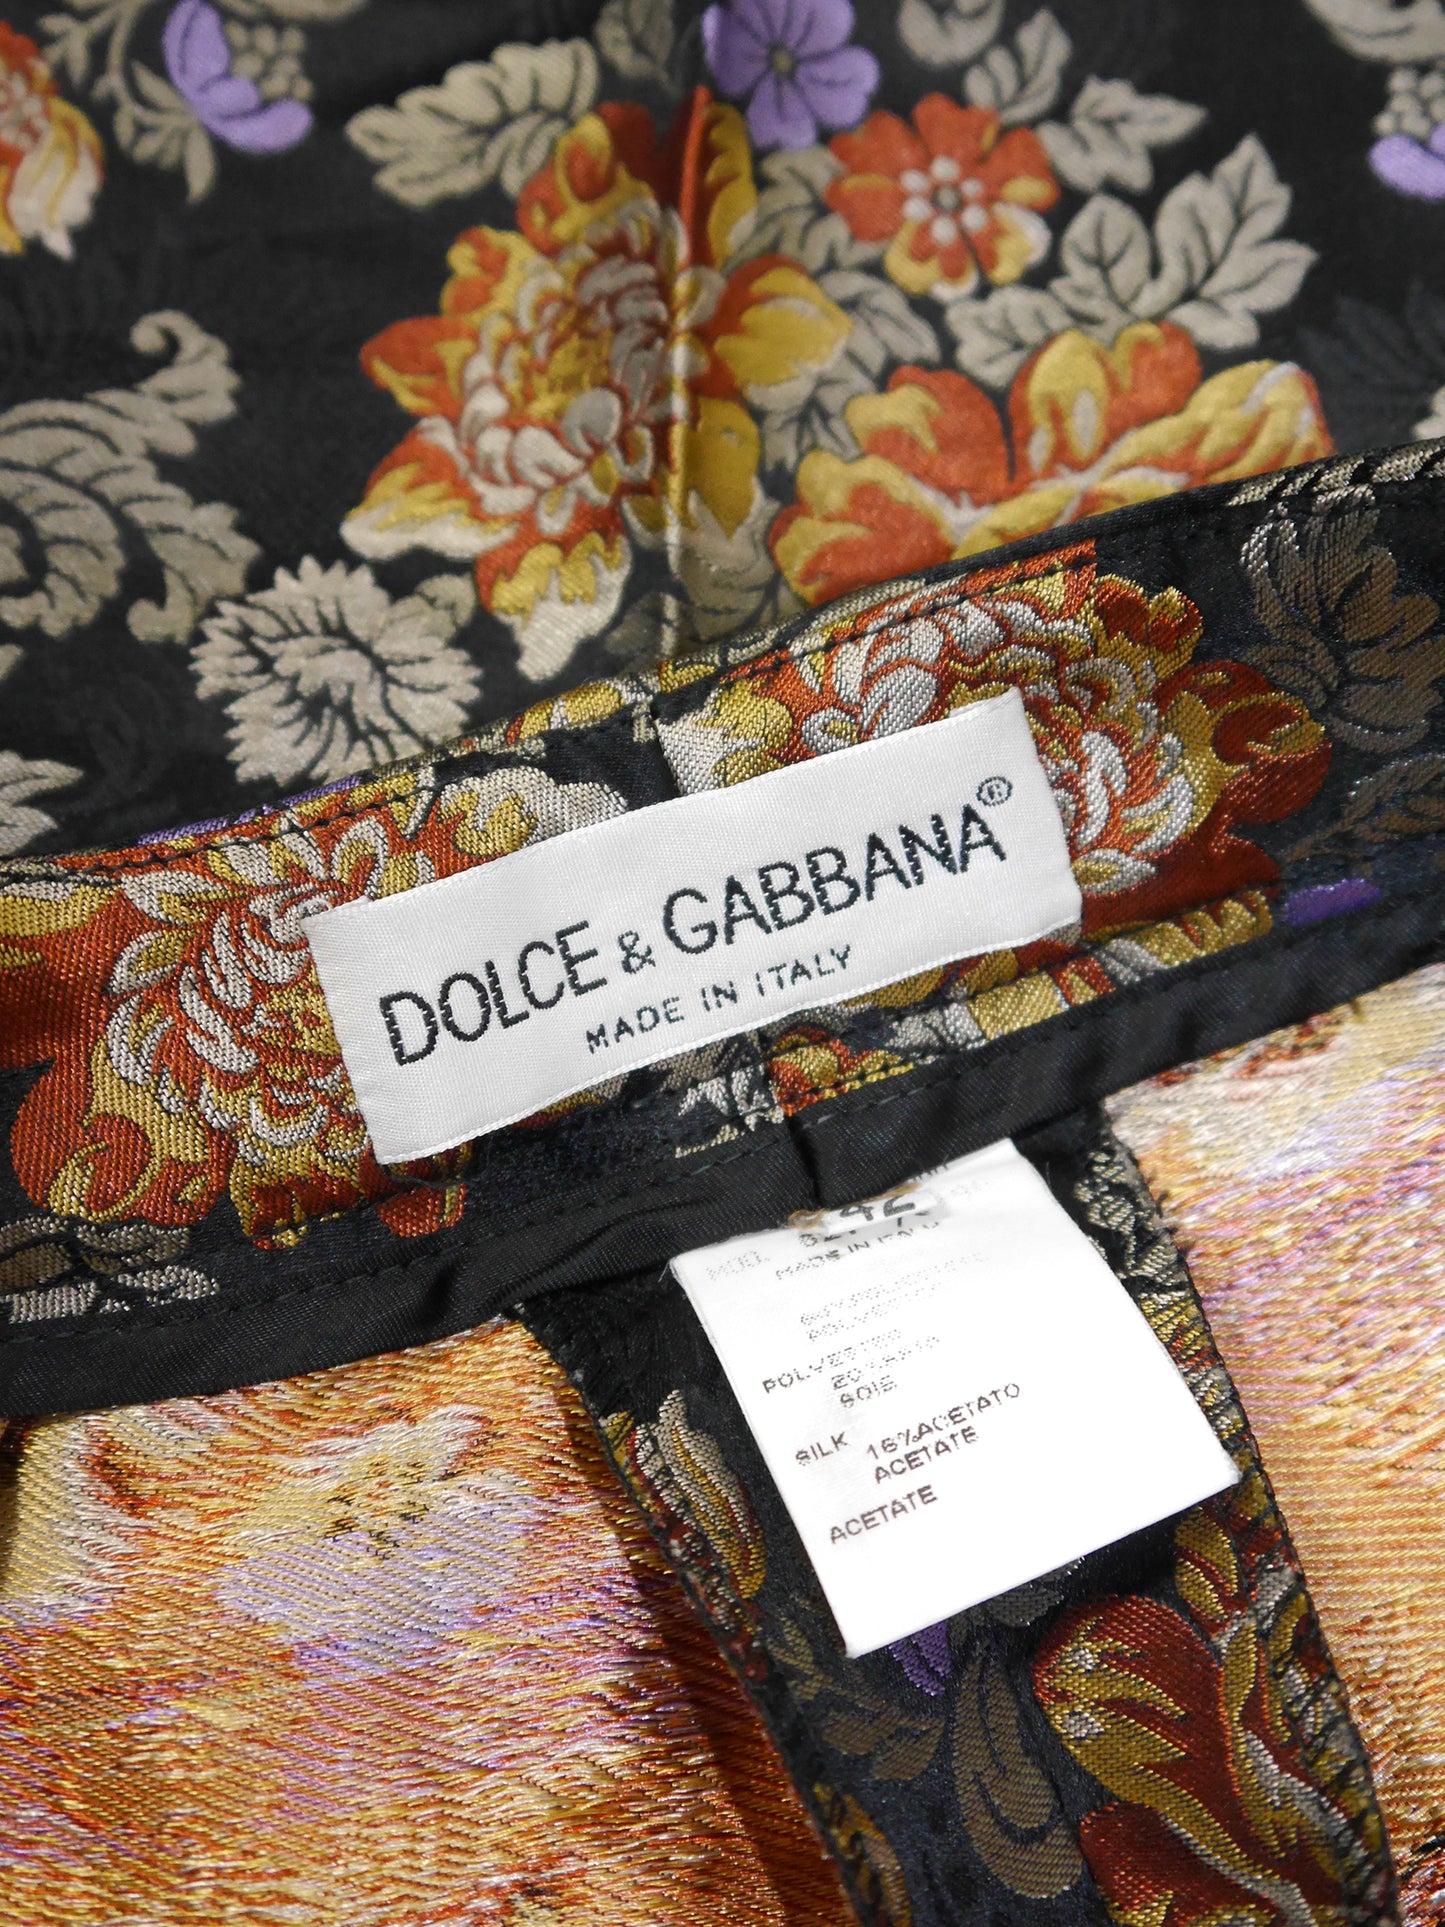 DOLCE & GABBANA 1990s Vintage Floral Jacquard Evening Pants Size IT 42